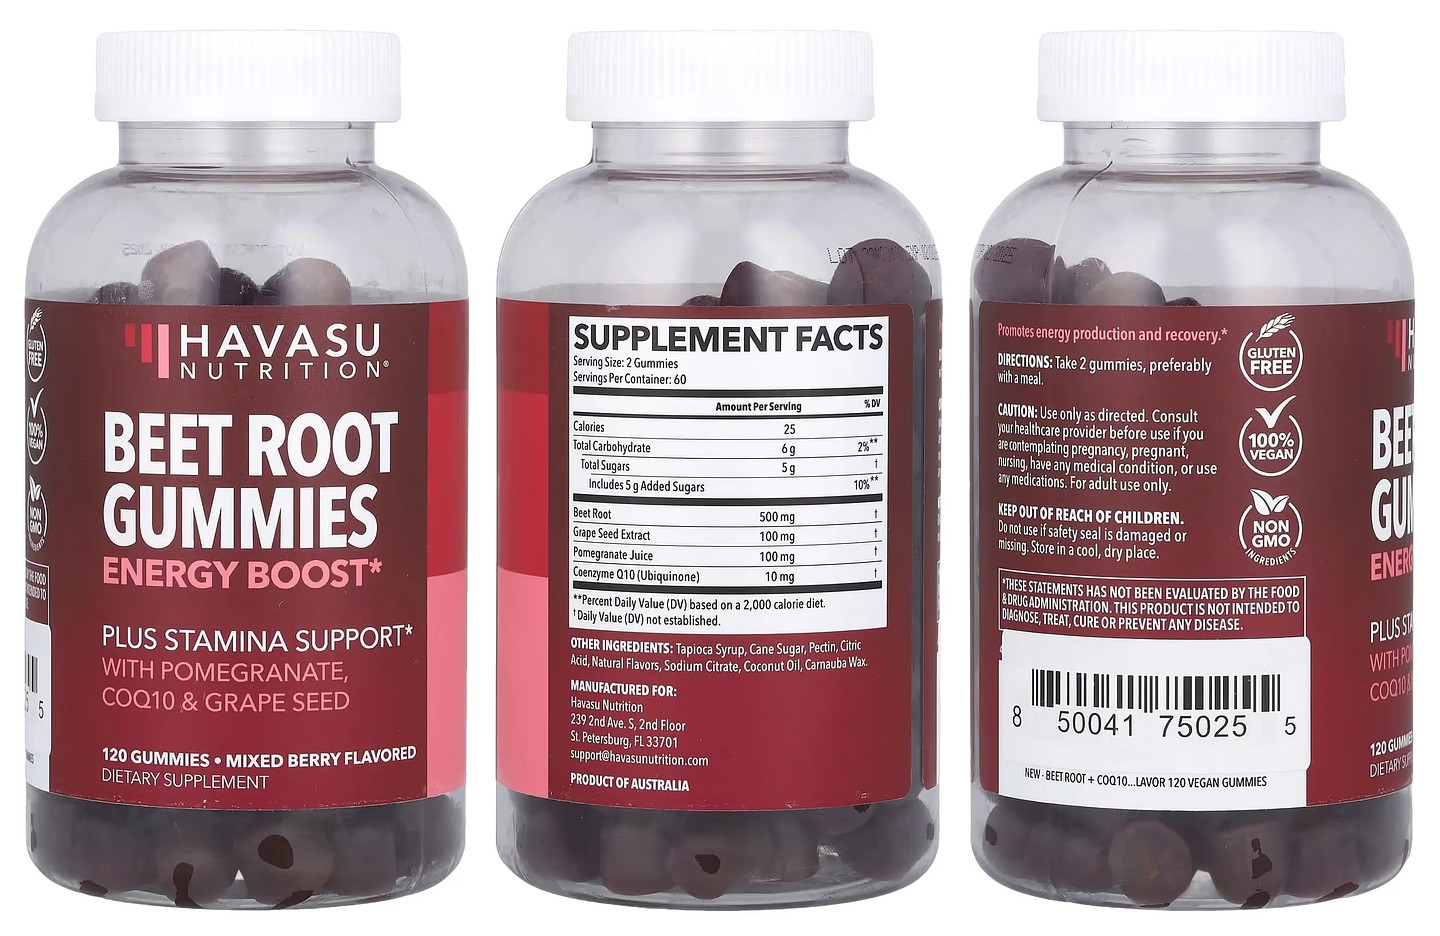 Havasu Nutrition, Beet Root Gummies packaging